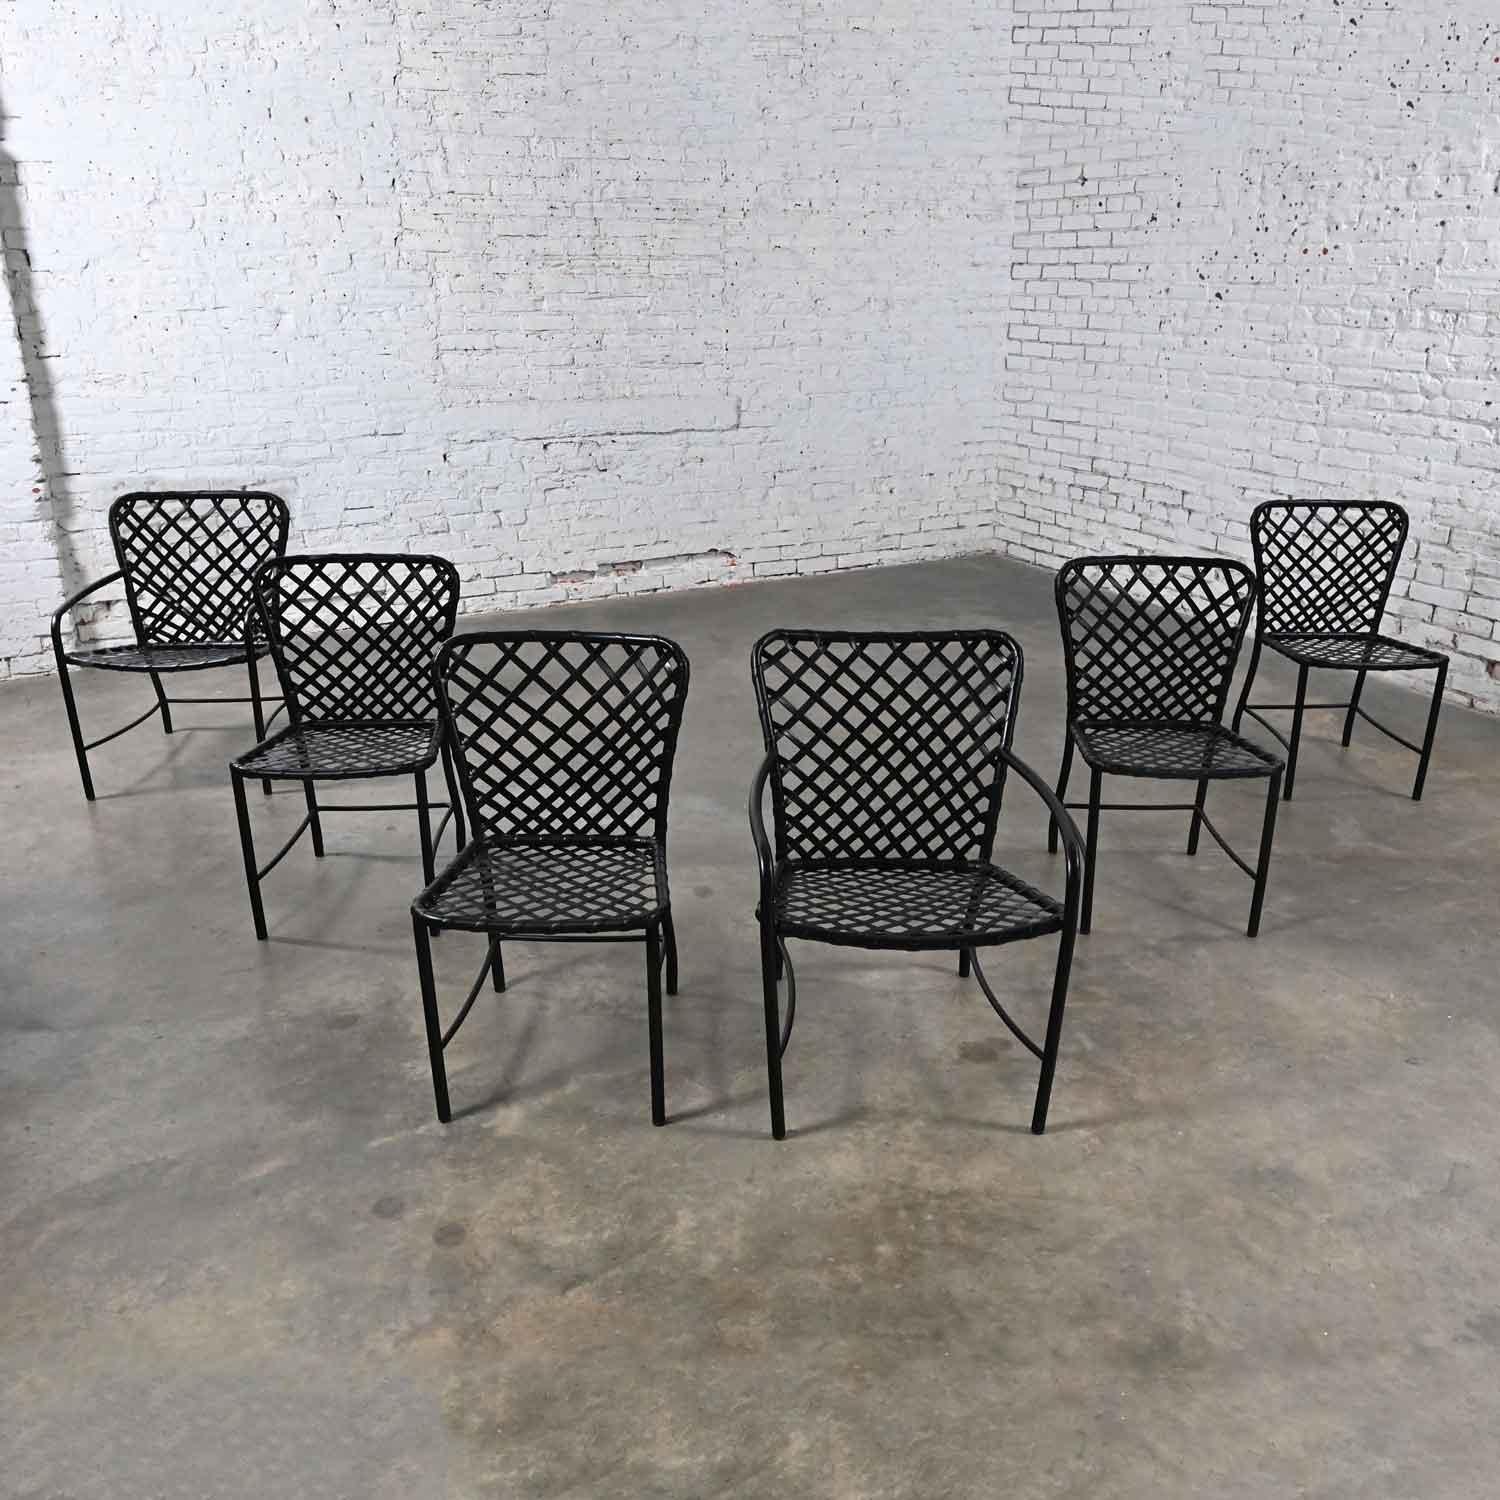 Merveilleuses chaises de salle à manger d'extérieur MCM (Mid Century Modern) Brown Jordan Tamiami par Hall Bradley. 4 chaises latérales et 2 fauteuils, ensemble de 6. Comprend des cadres en aluminium avec des sangles en vinyle tissé. Ils ont reçu